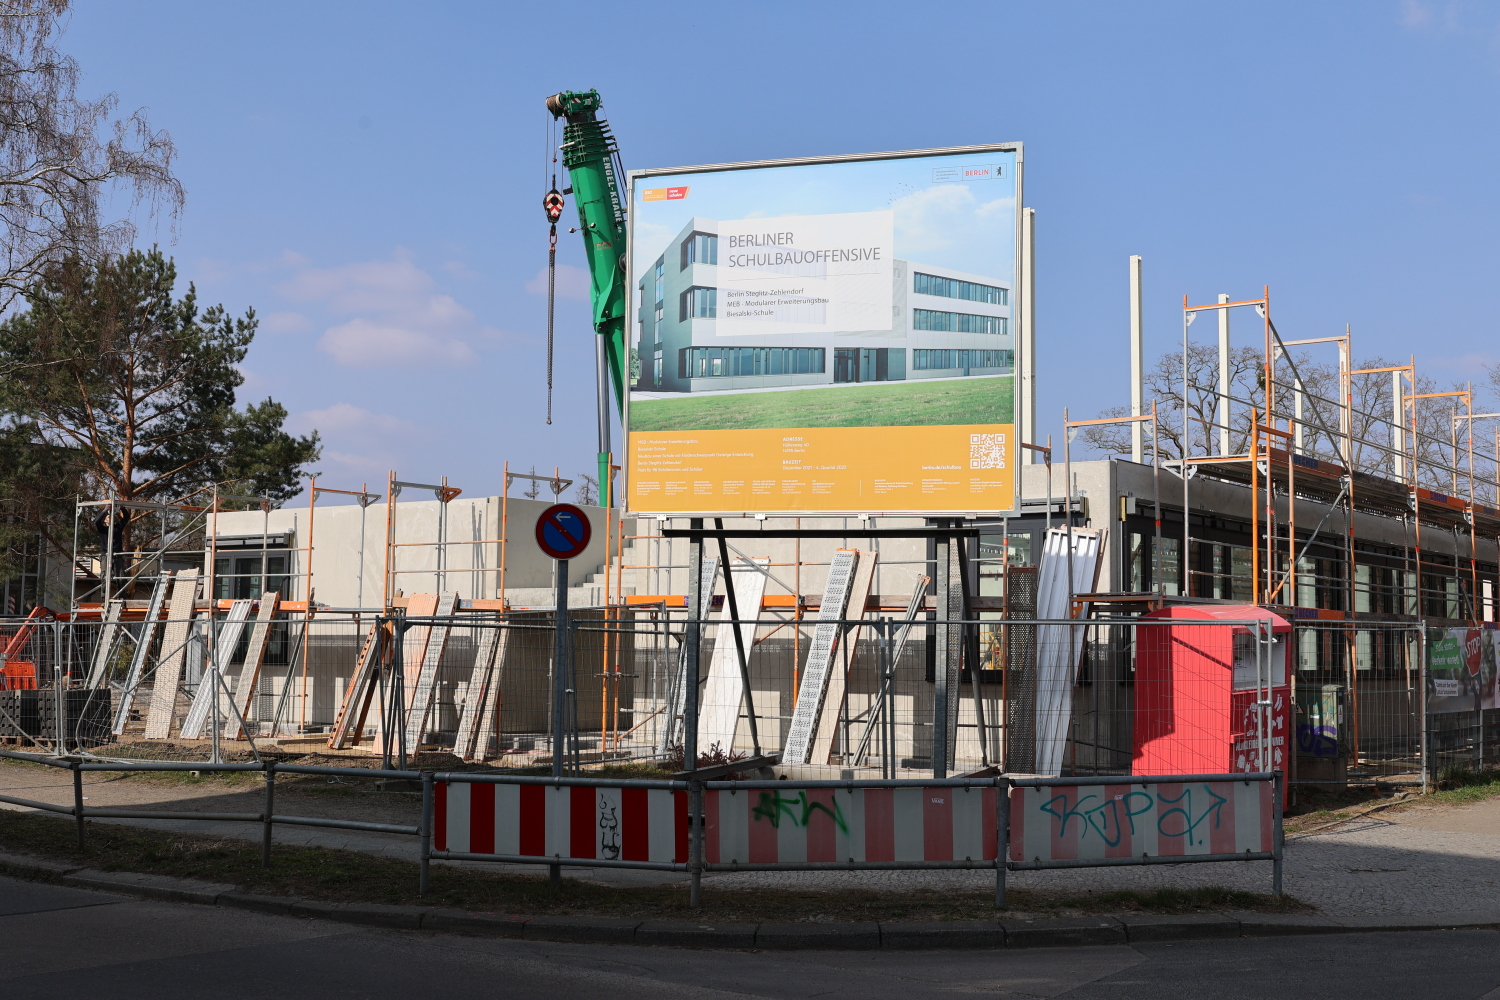 Biesalski-Schule - Bauarbeiten & Bauschild zum Modularen Erweiterungsbau (25.03.2022)